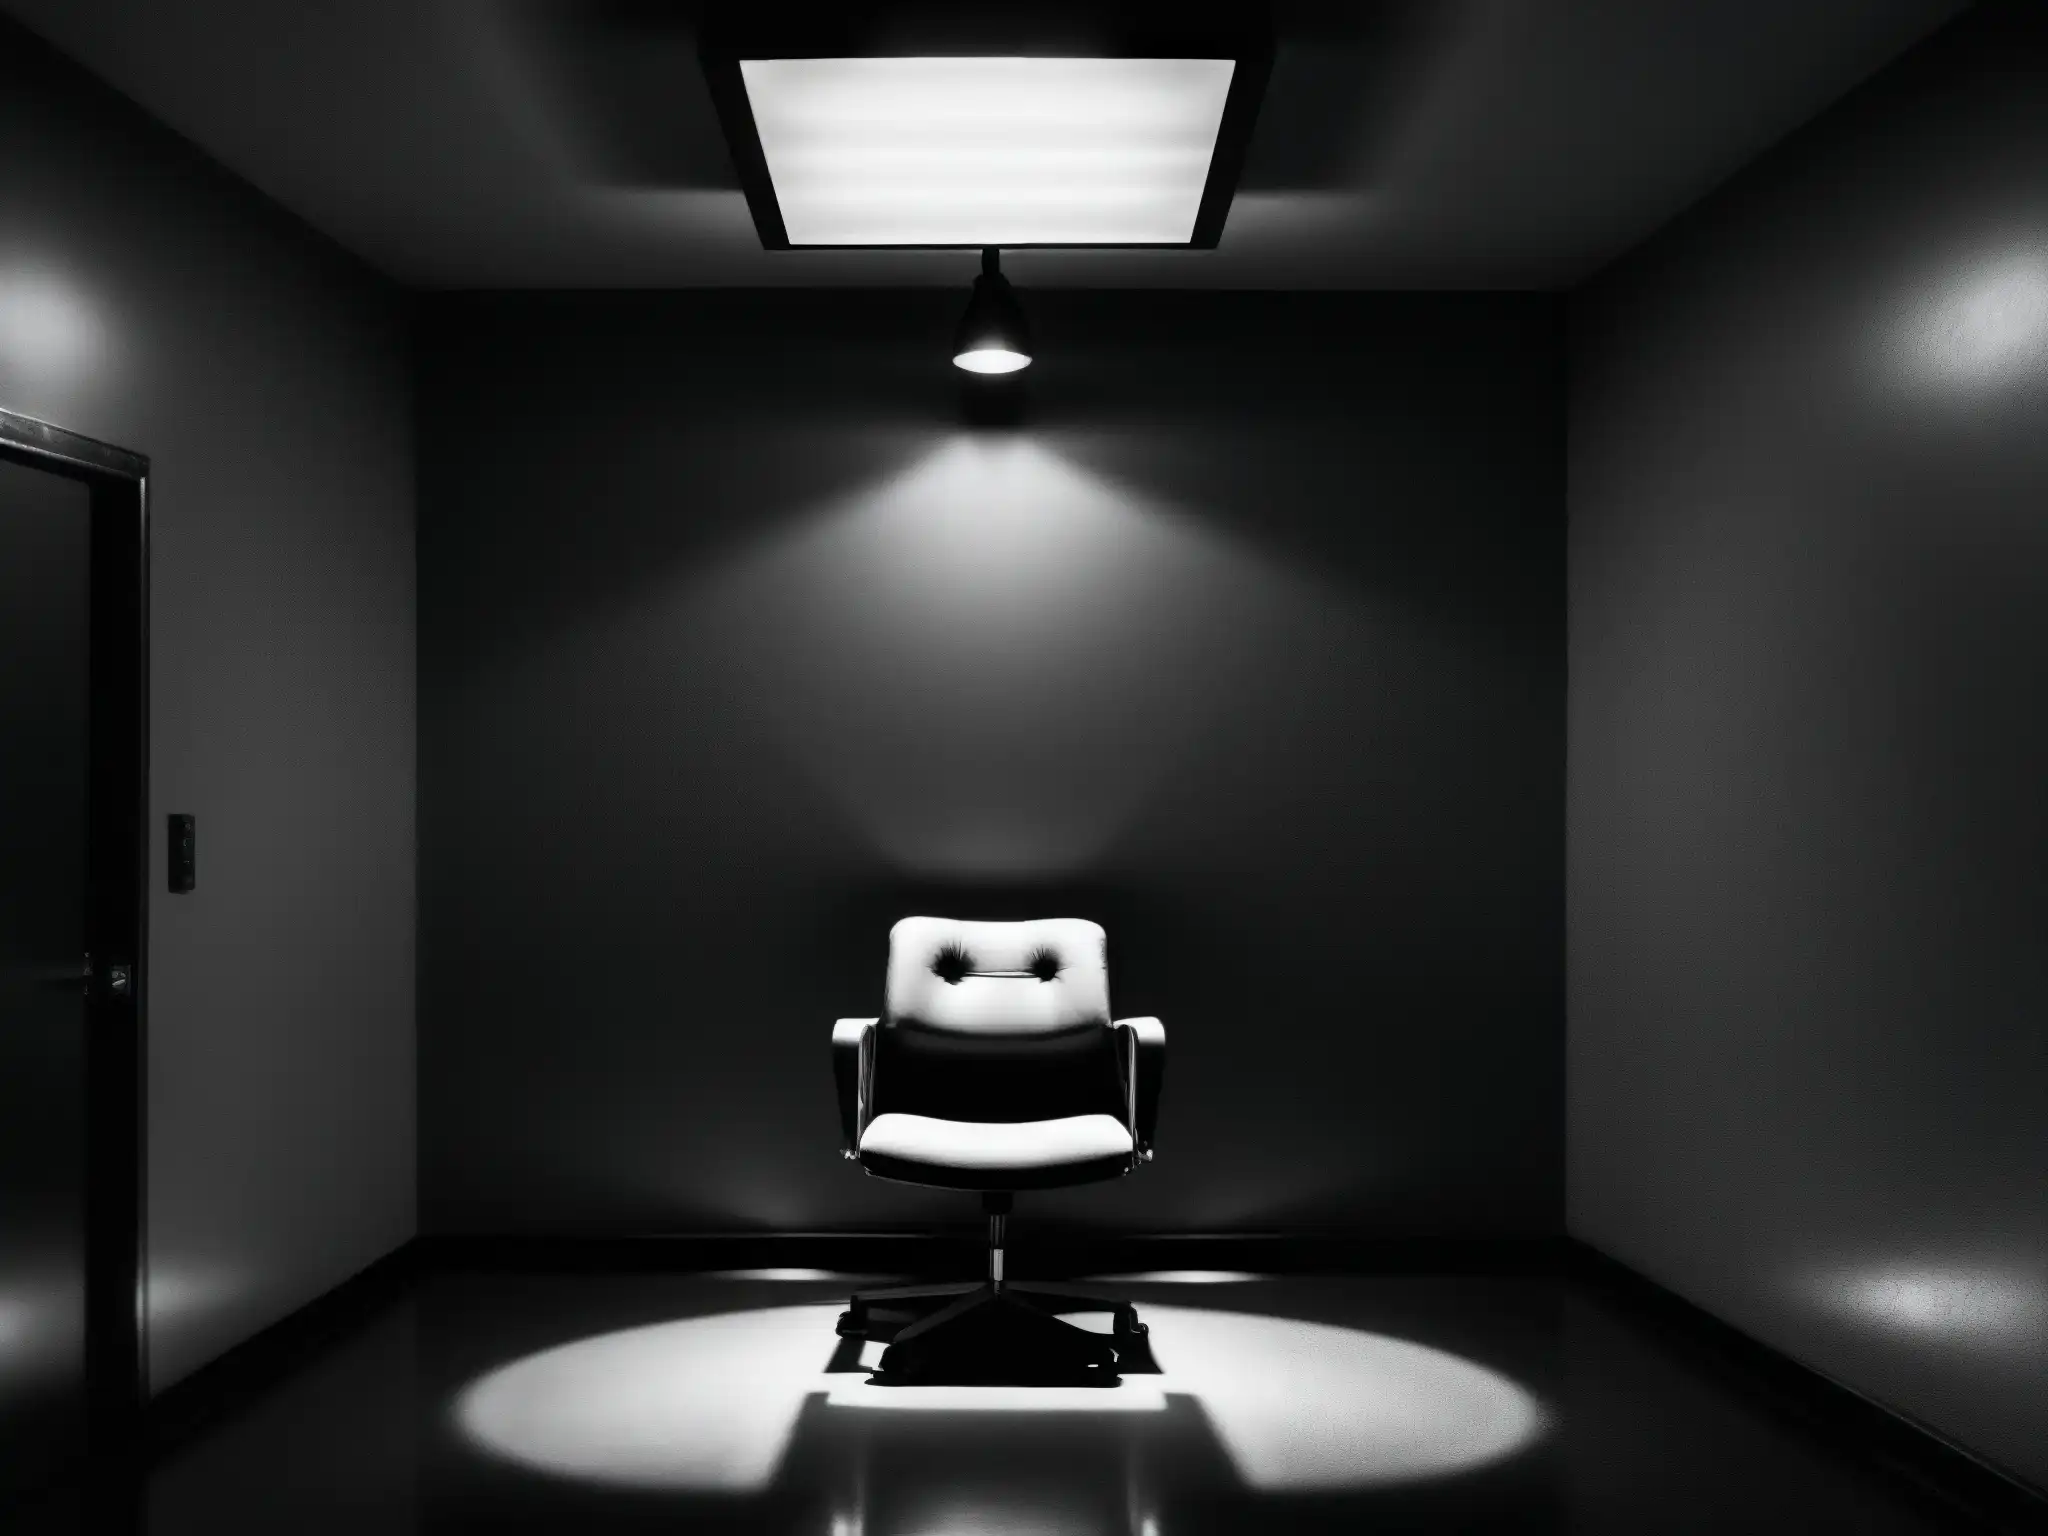 Imagen en blanco y negro de una sala de interrogatorio tenue, con una silla iluminada por una luz cenital